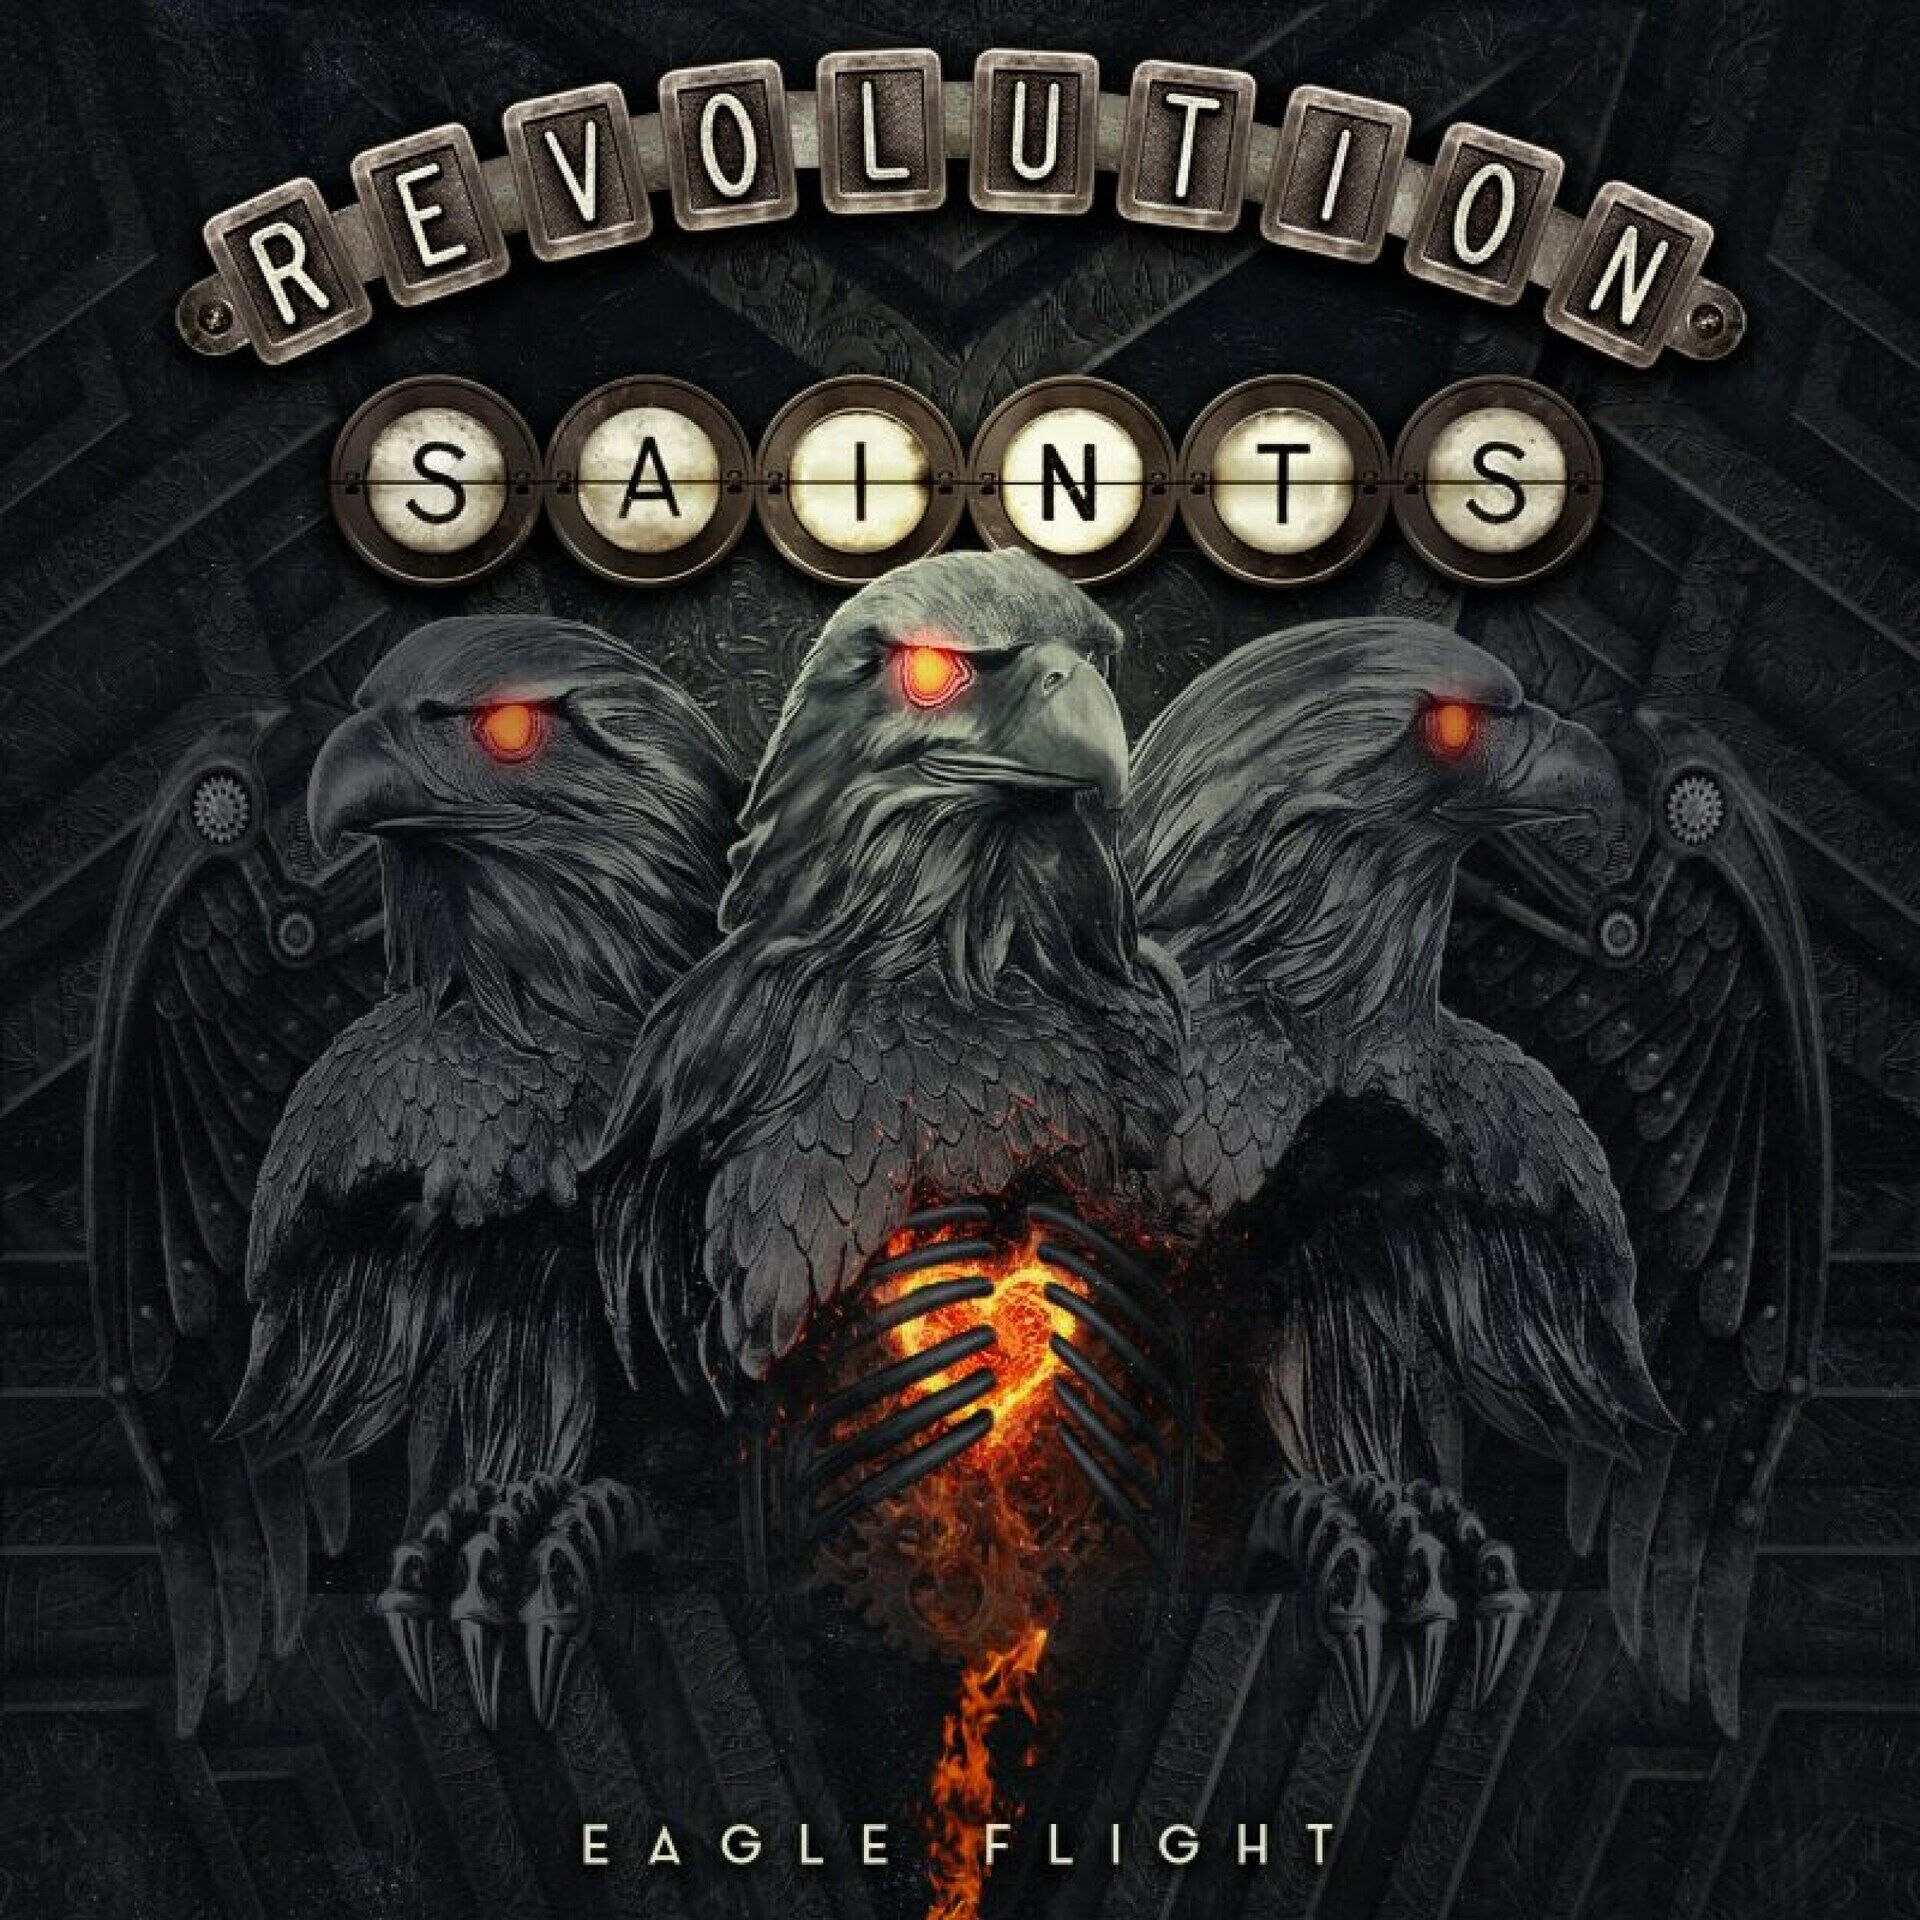 REVOLUTION SAINTS - Eagle Flight [CD]